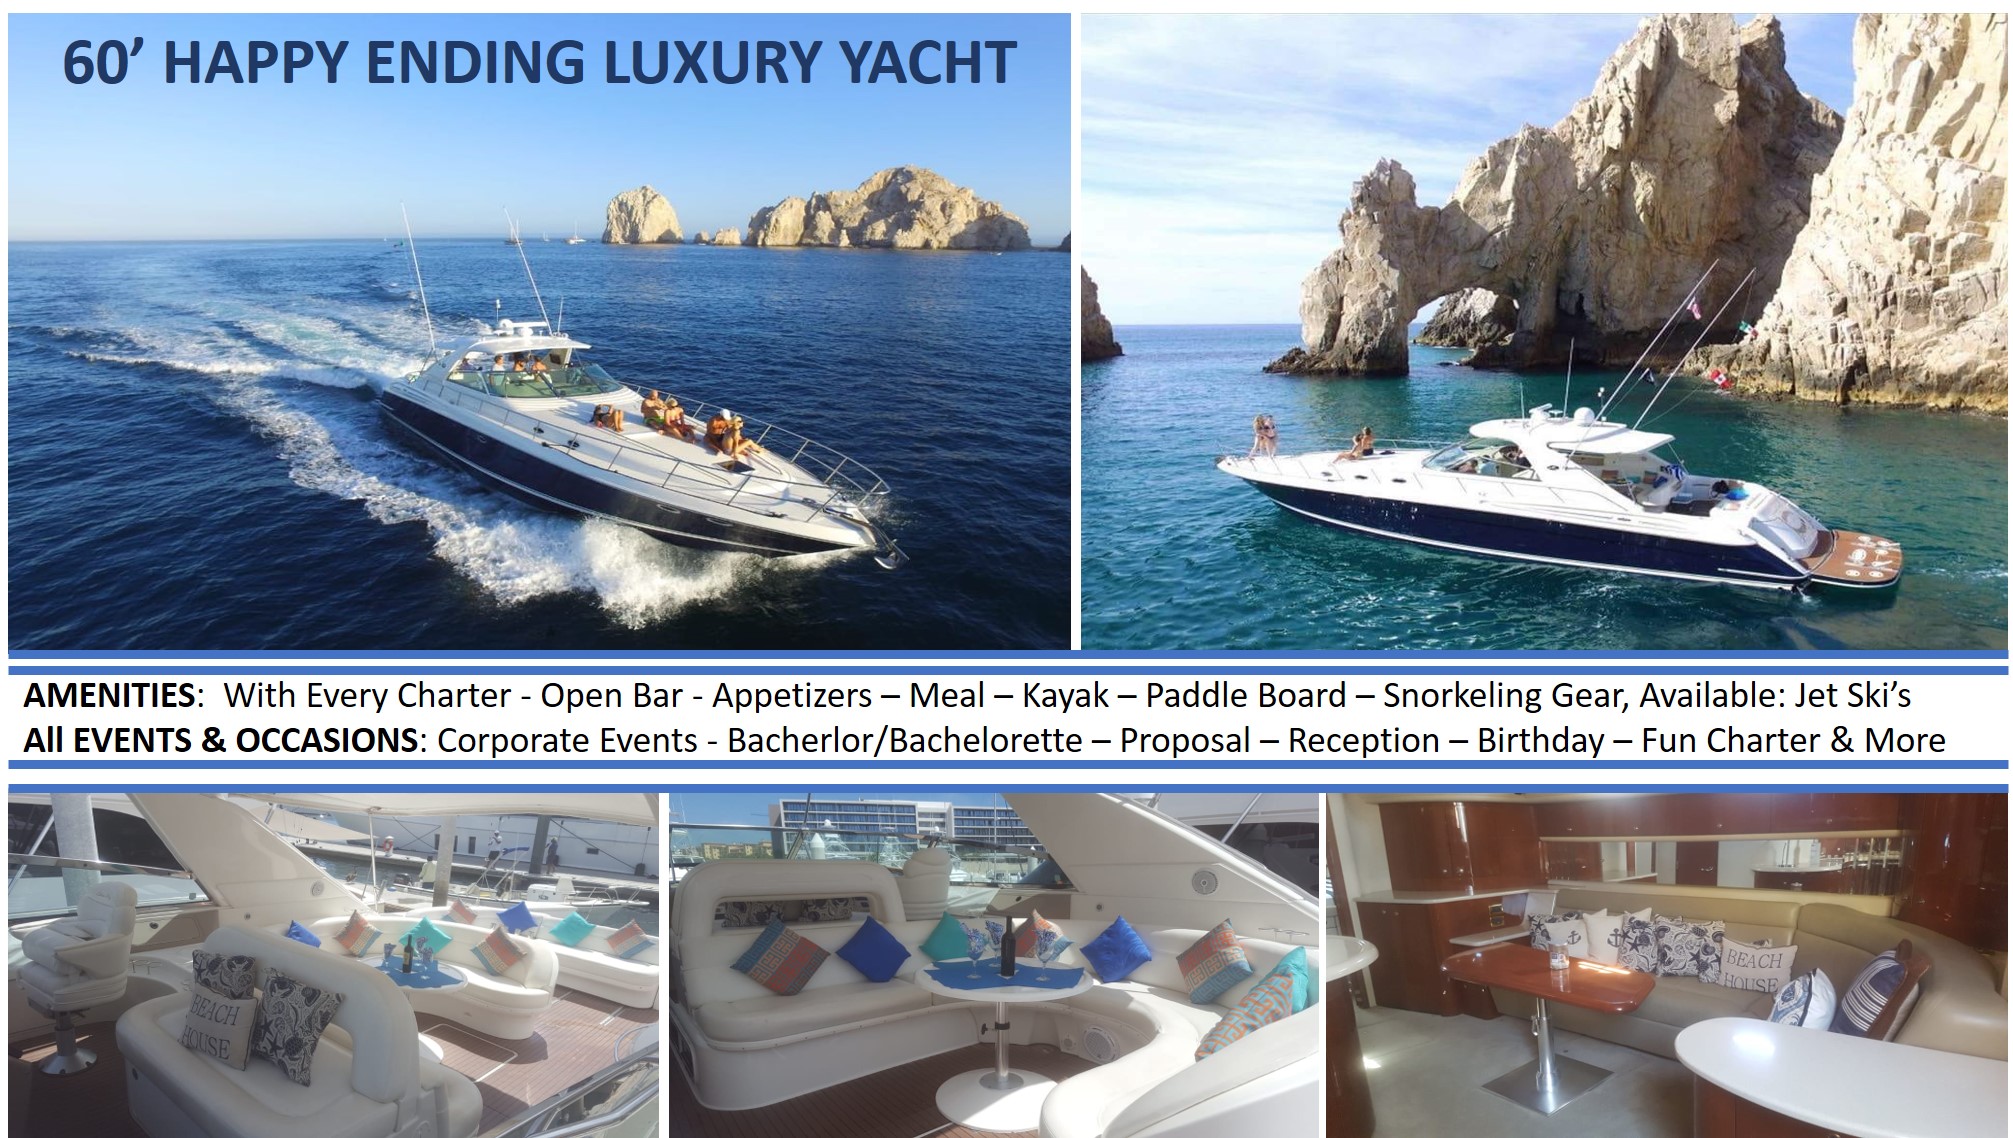 60-happy-ending-luxury-yacht